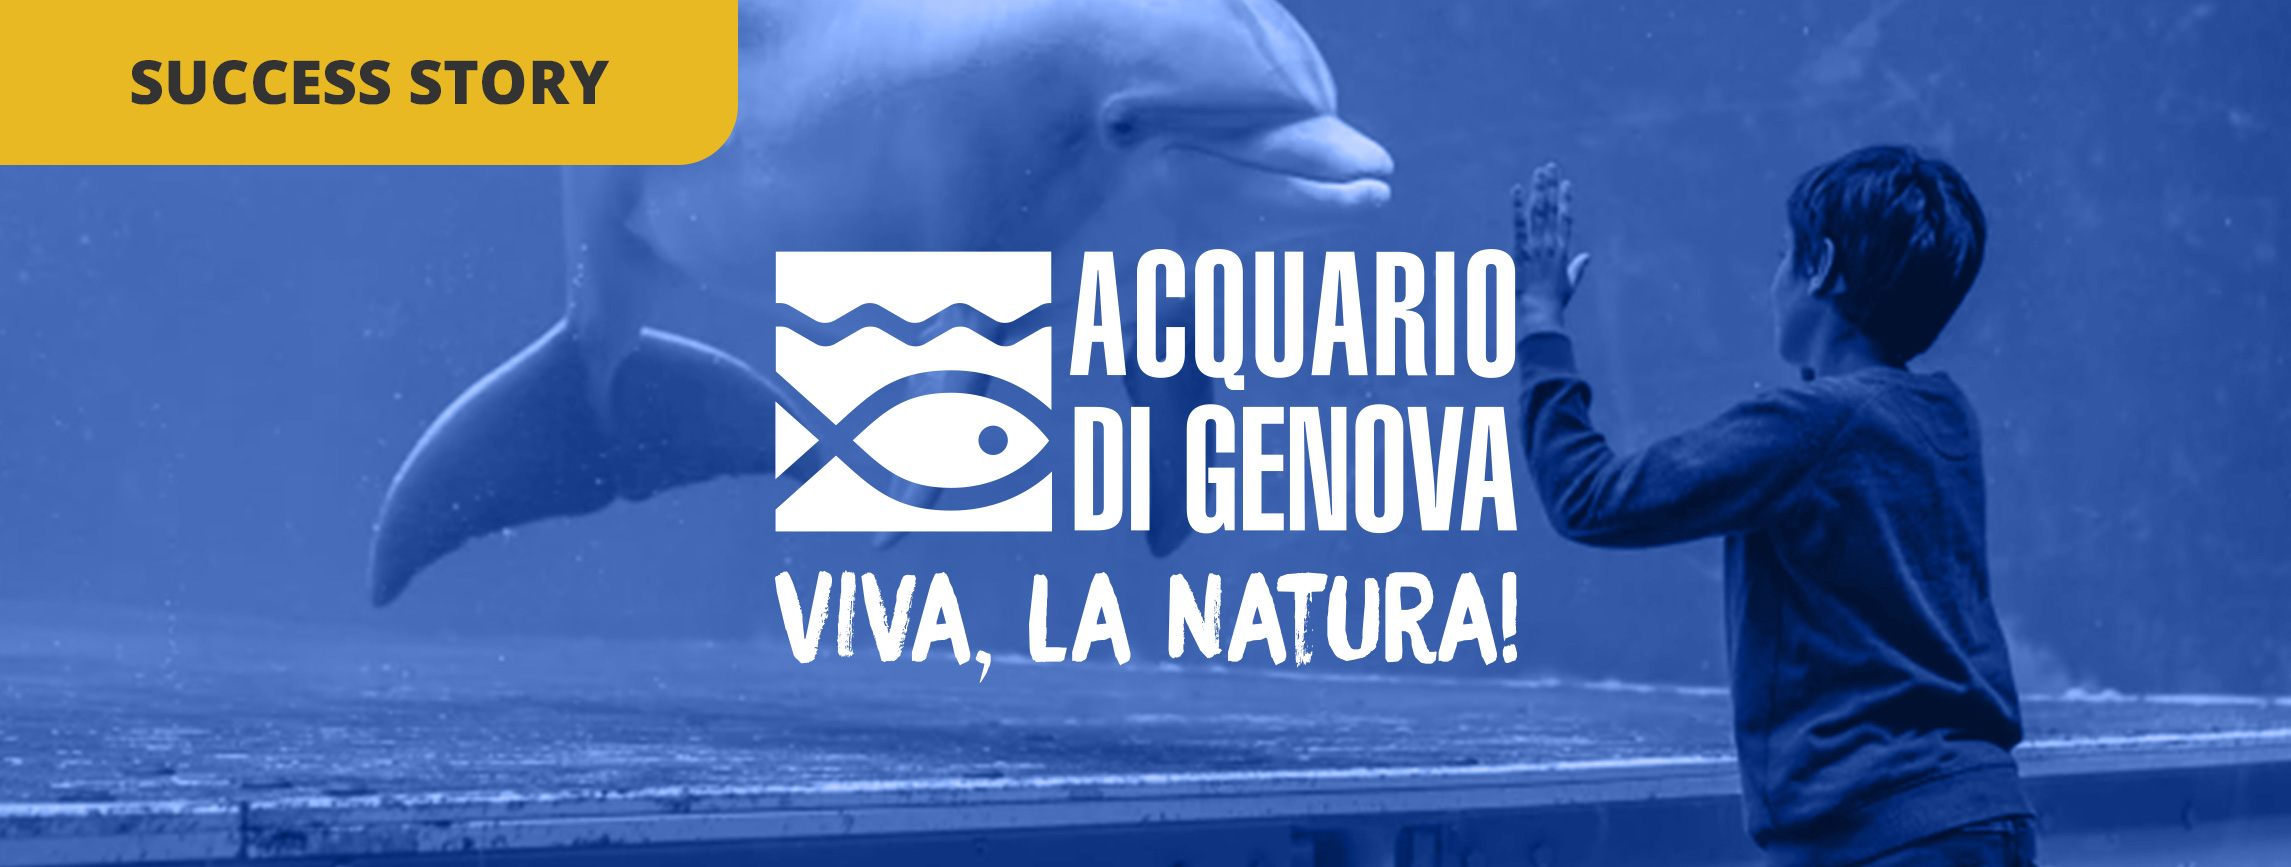 How Acquario di Genova became one of the World‘s Top 10 Aquariums on TripAdvisor